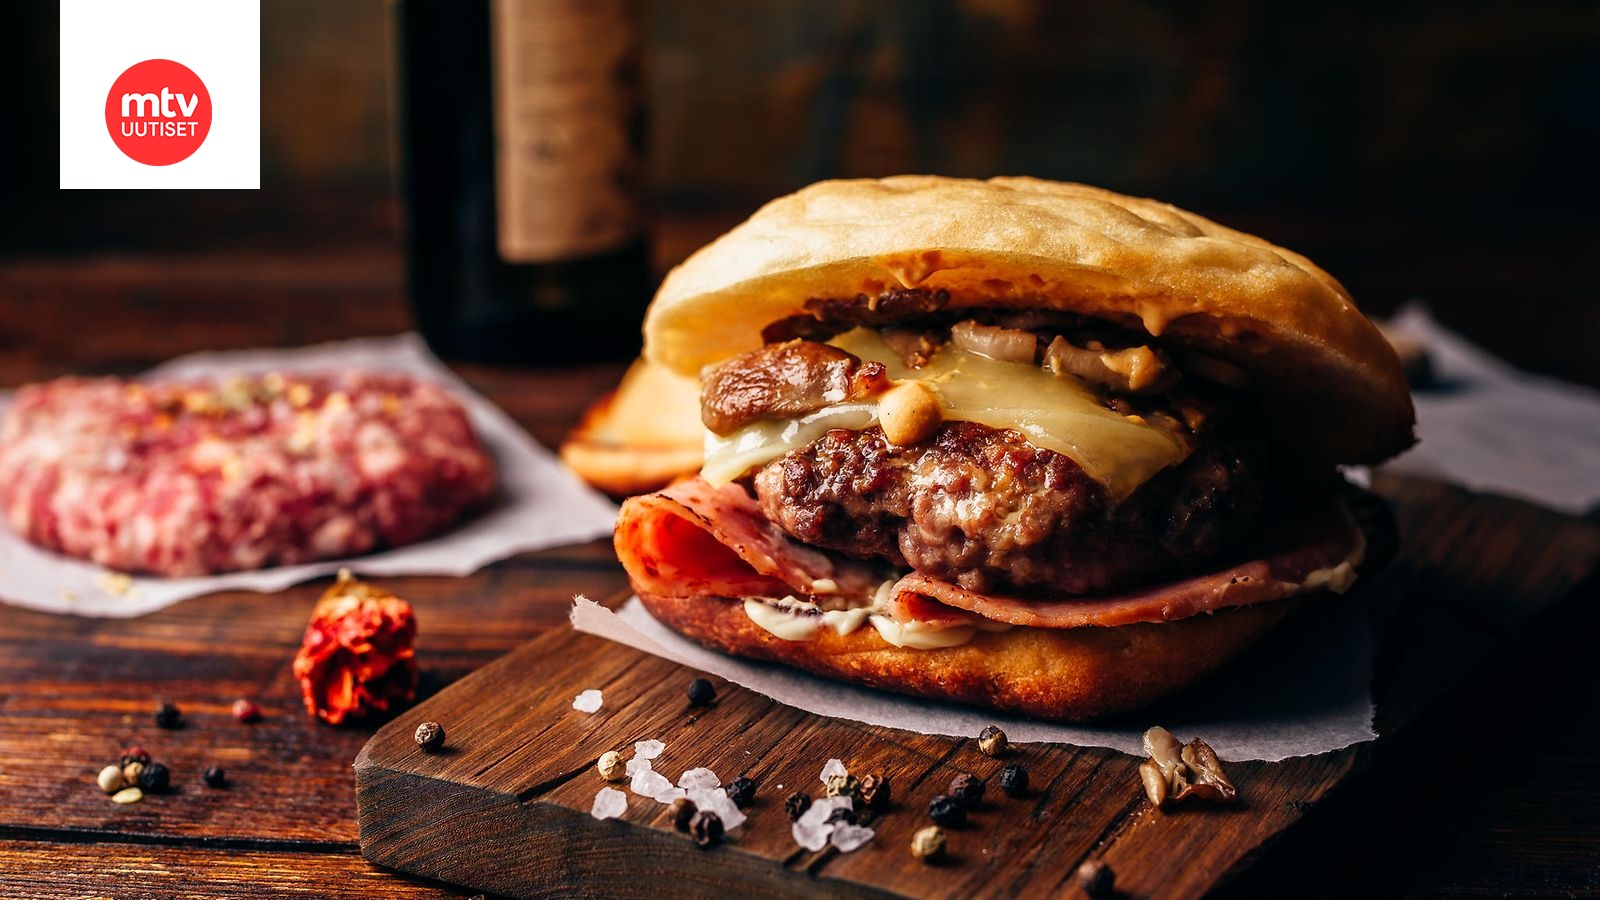 Paras jauhelihapihvi burgeriin: Salainen raaka-aine lisätään  paistovaiheessa | Makuja | MTV Uutiset